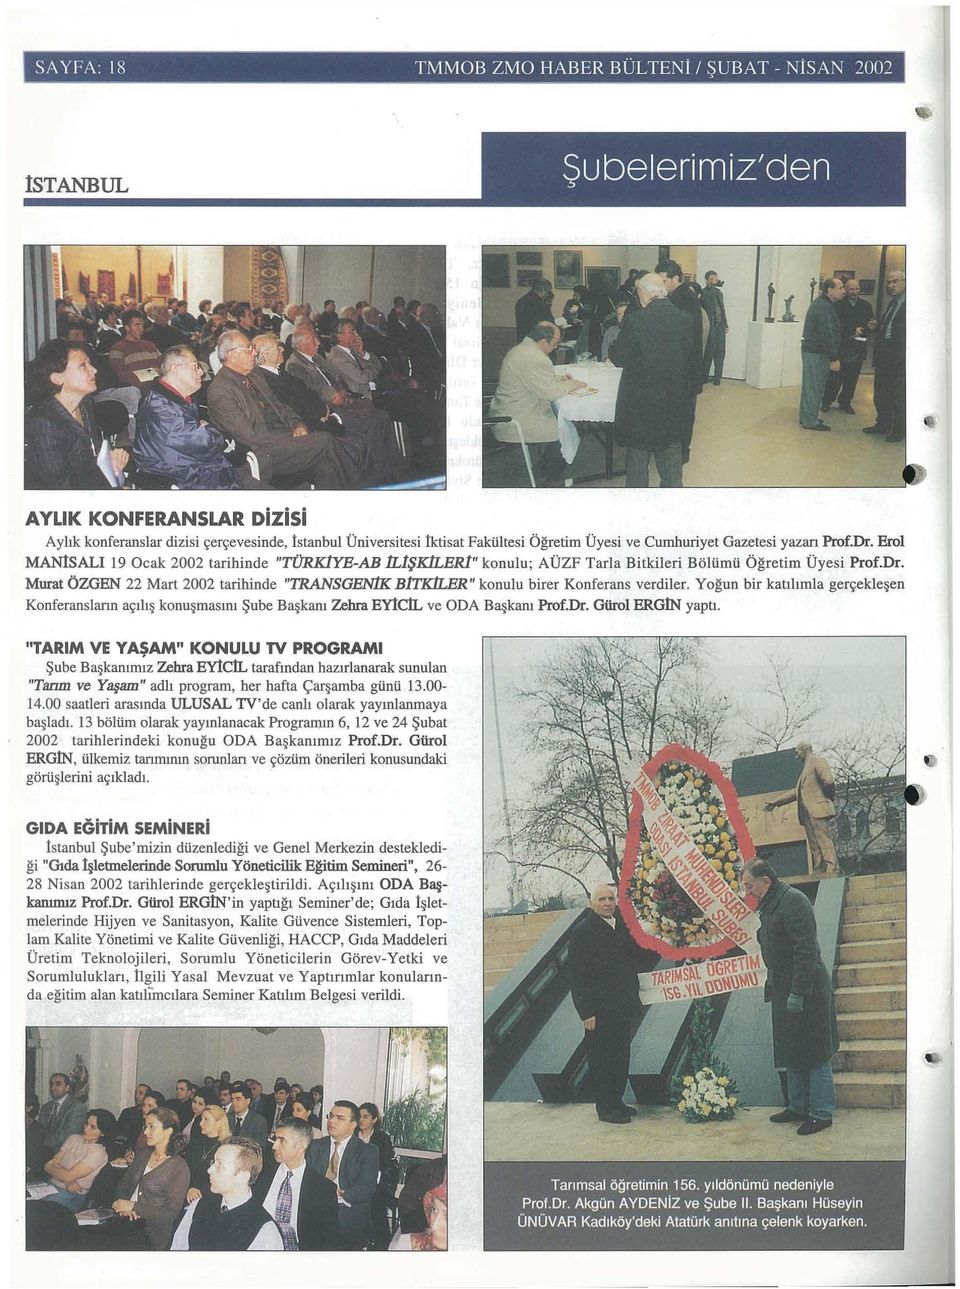 YE-AB n-1$k1ler1" konulu; AUZF Tarla Bitkileri Boliimii Ogretim Uyesi Prof.Dr. Murat OZGEN 22 Mart 2002 tarihinde "TRANSGEN1K B1TK1LER" konulu birer Konferans verdiler.